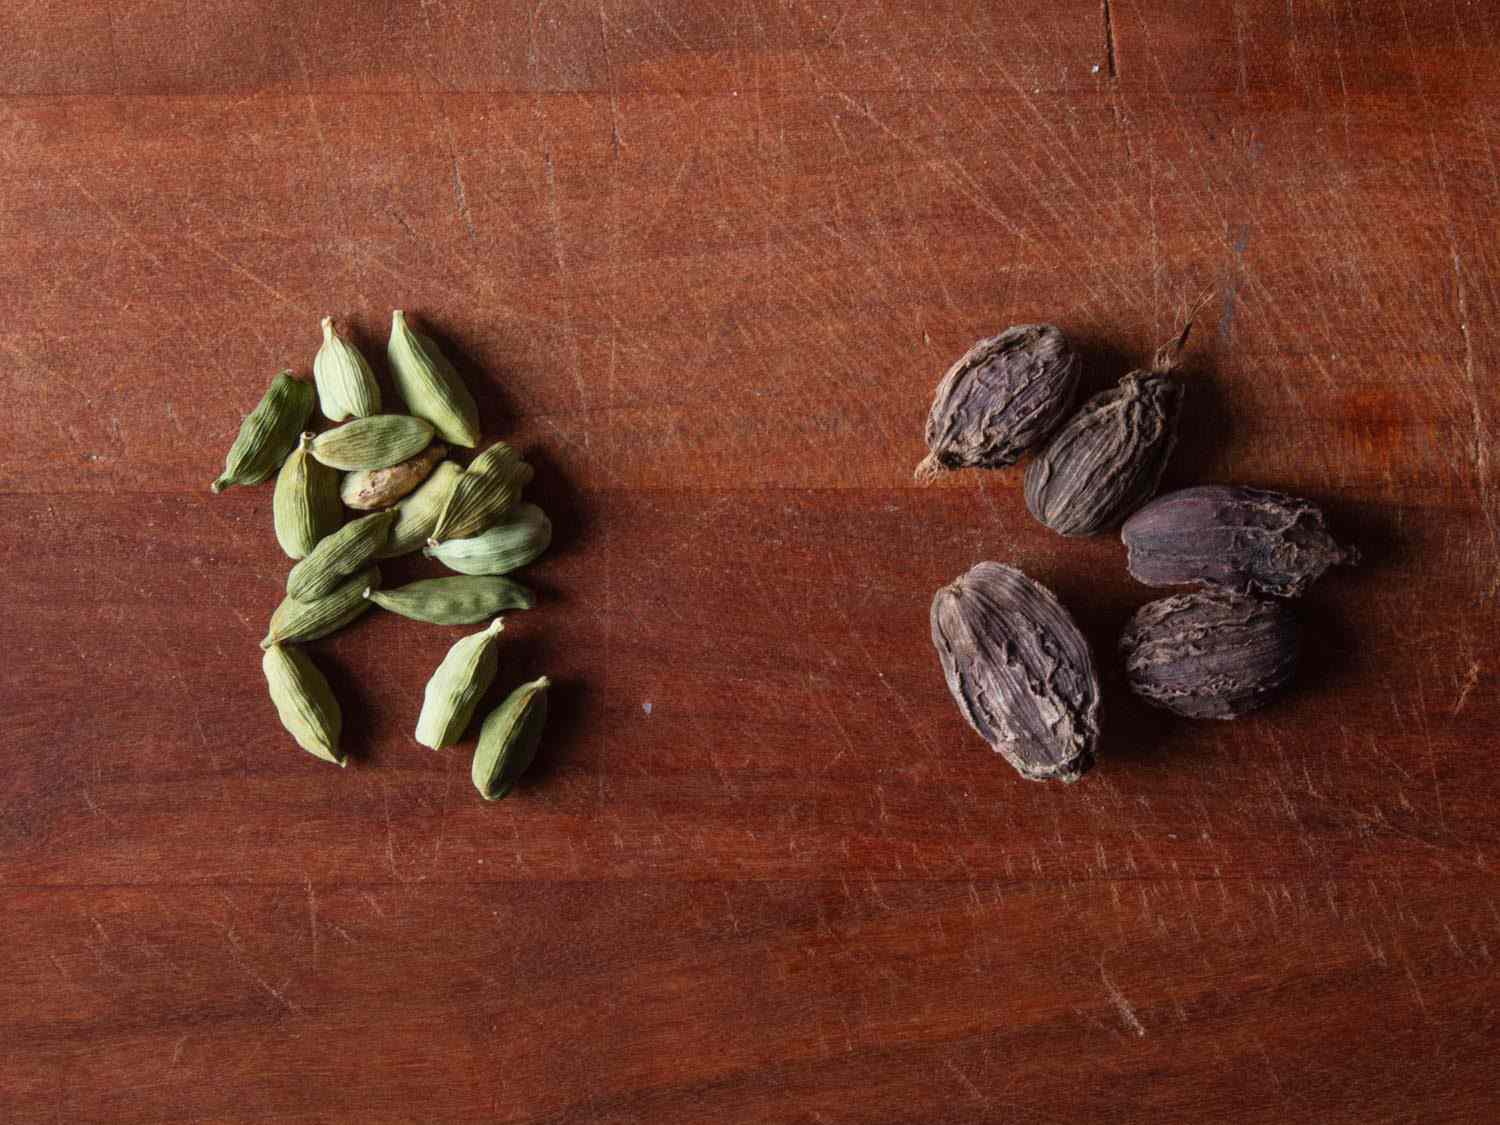 绿色豆蔻豆荚(左)和棕色豆蔻豆荚(右)的对比